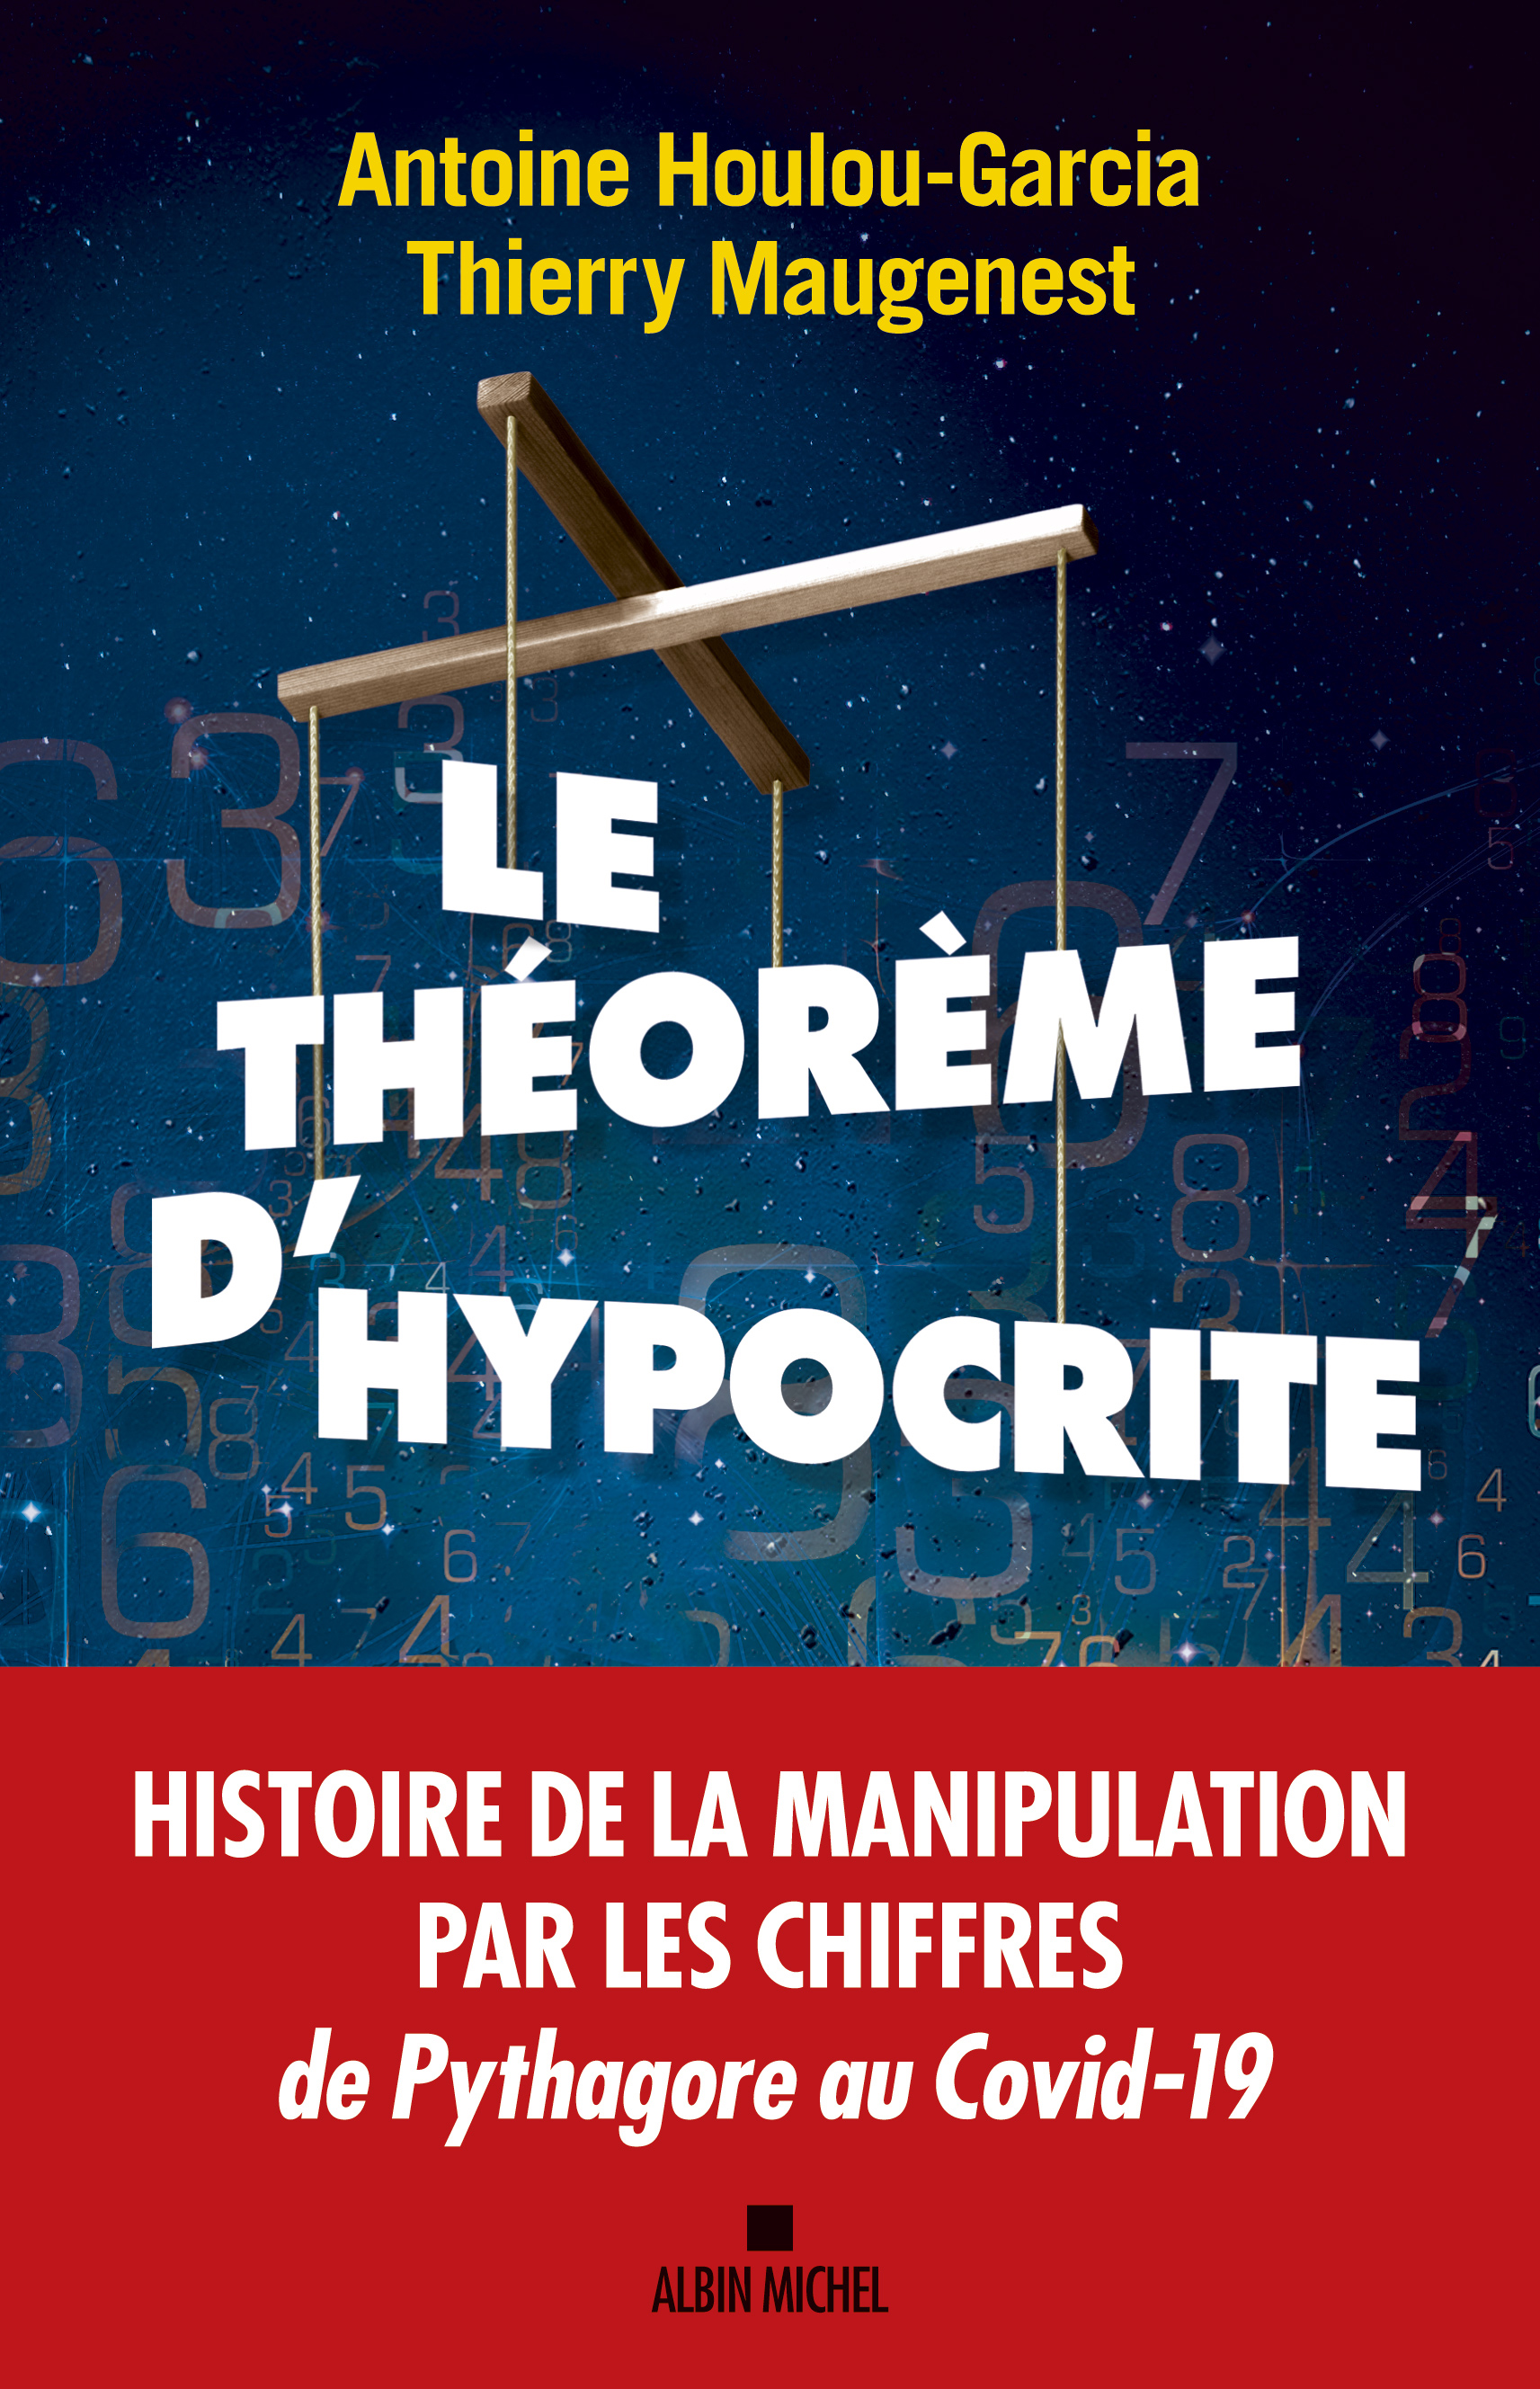 Couverture du livre Le Théorème d'hypocrite